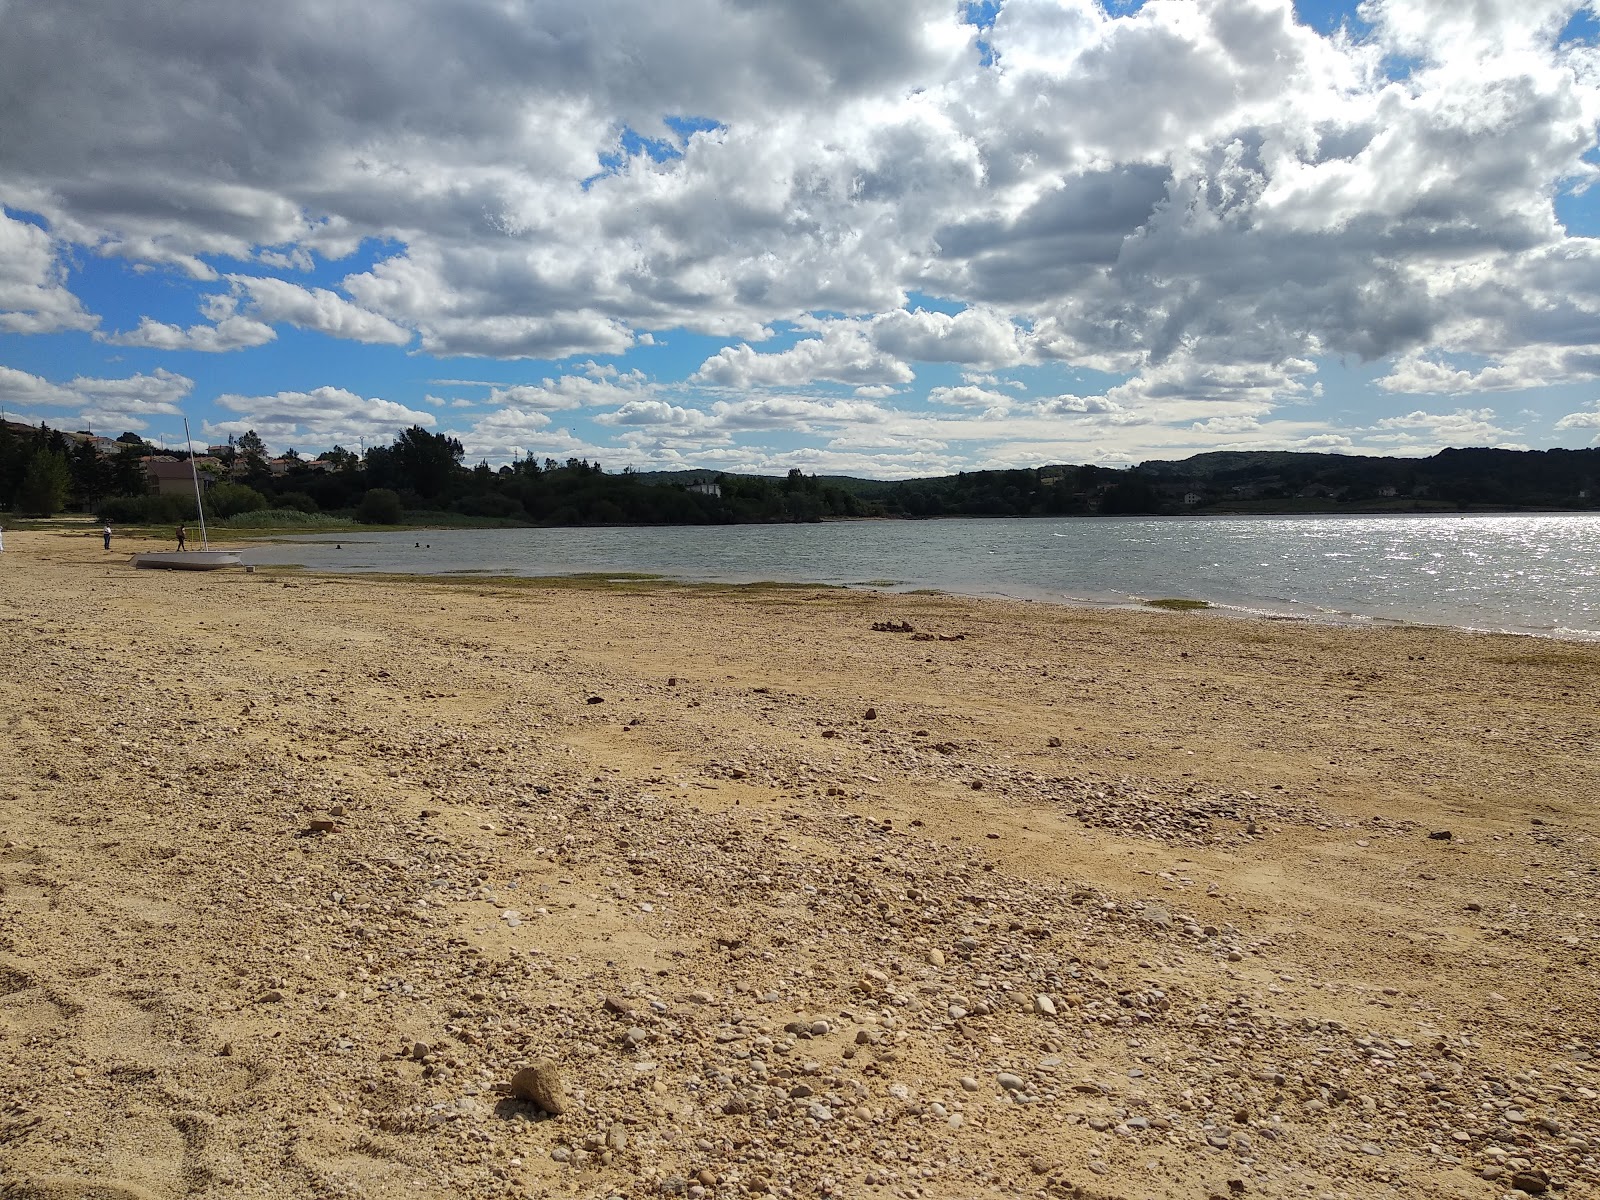 Fotografie cu Playa Embalse del Ebro cu o suprafață de apa pură turcoaz